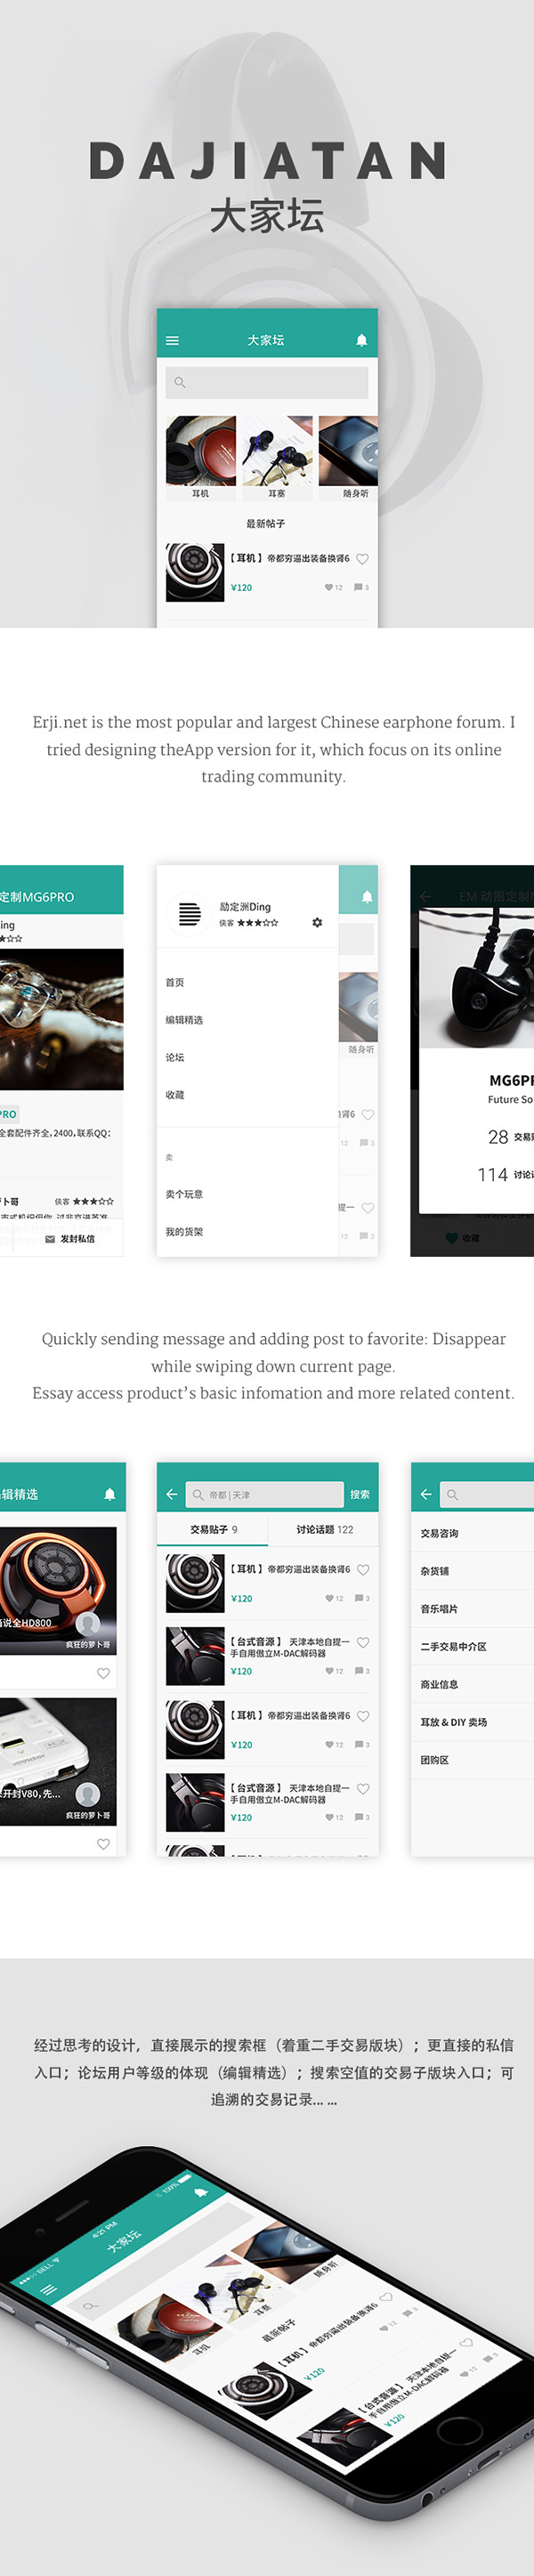 Dingzhou 励定洲 app forum TRENDING buy